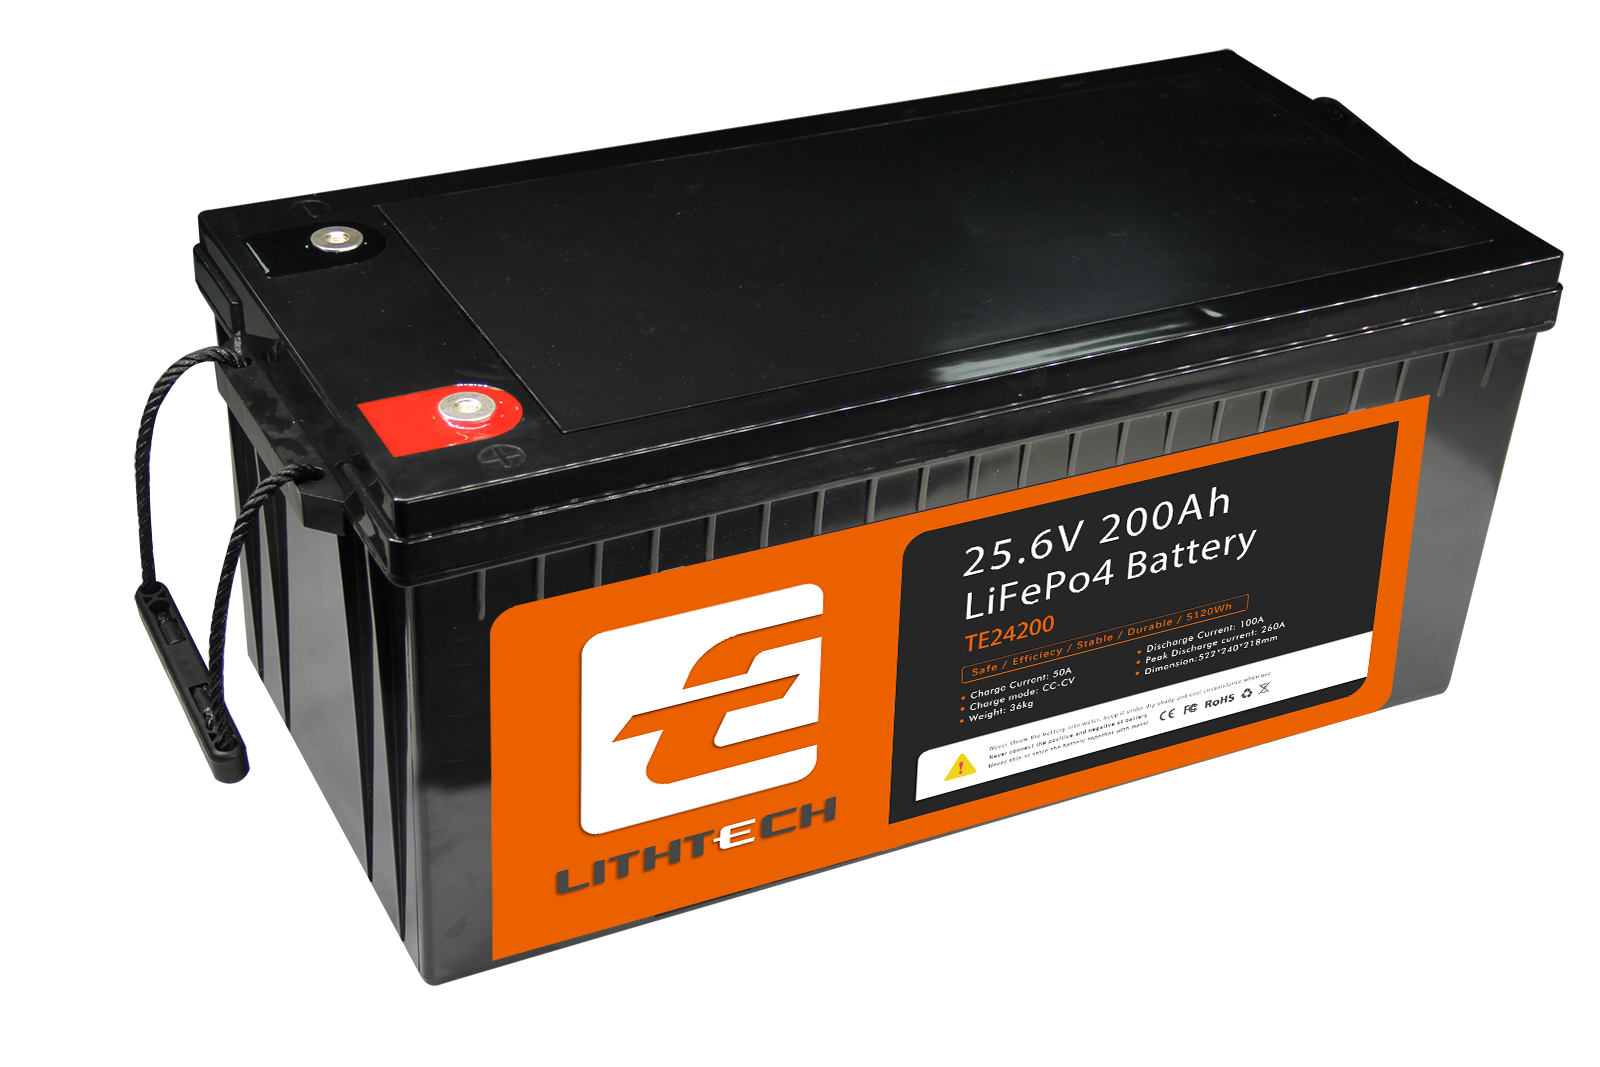 Lithtech TE24200 LiFePO4 Lithiumbatterie 24 V 200 Ah für netzunabhängige Speicherung von Solarwindenergie